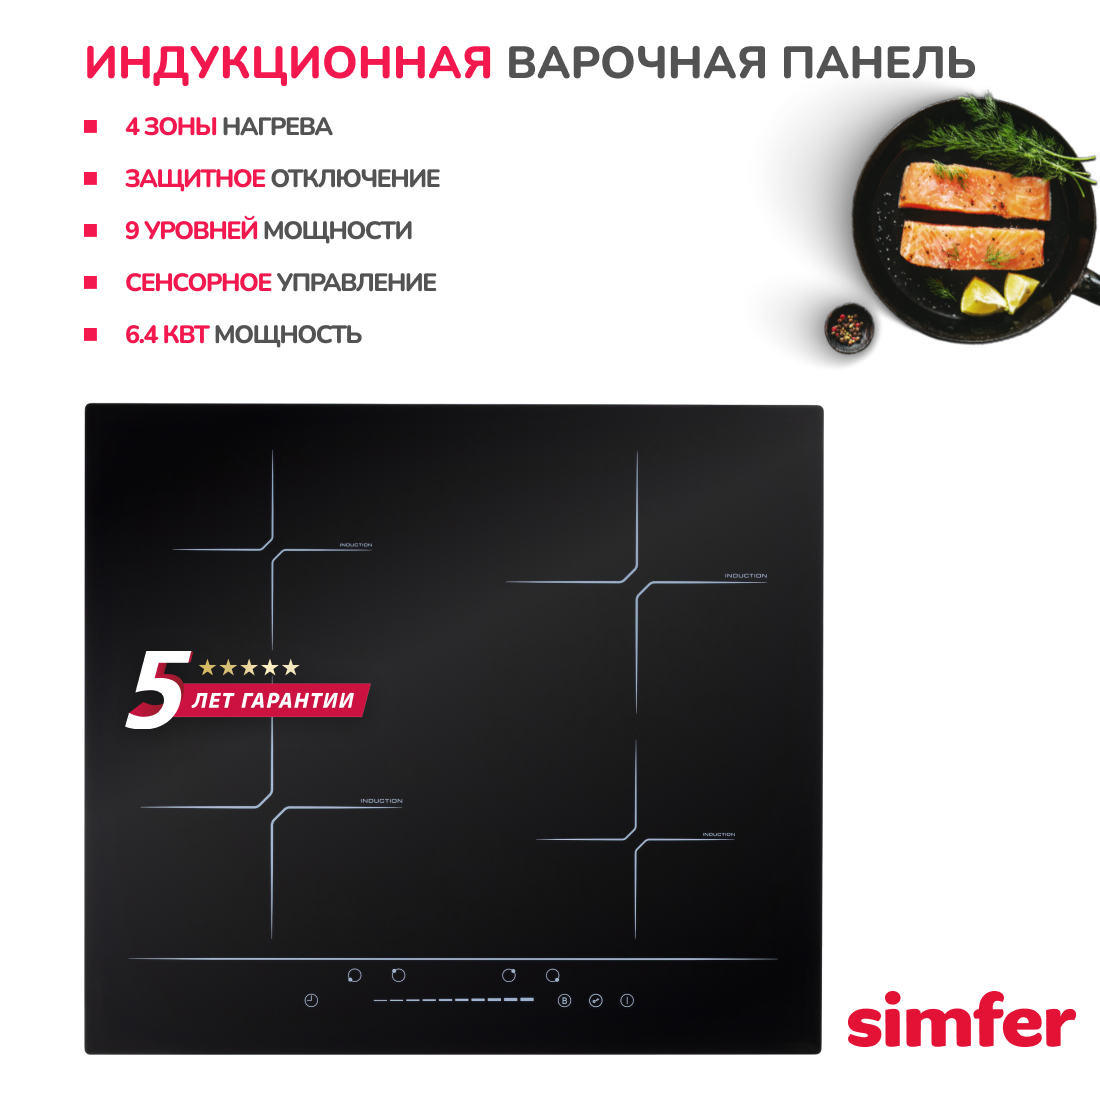 Индукционная варочная панель Simfer H60I74S002, цвет черный - фото 2